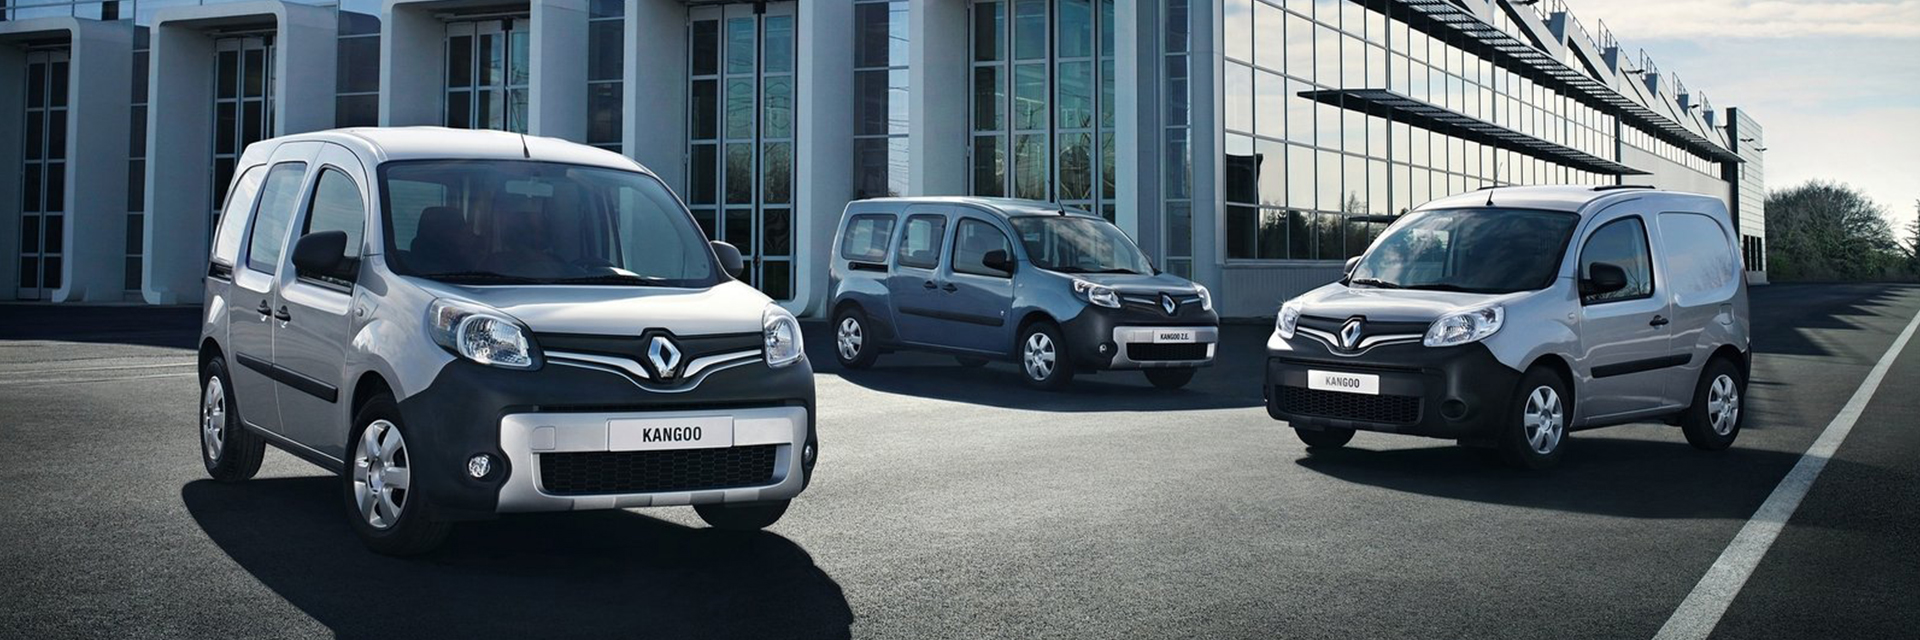 Renault Kangoo, carros novos, carros km0, carros serviço, carros usados